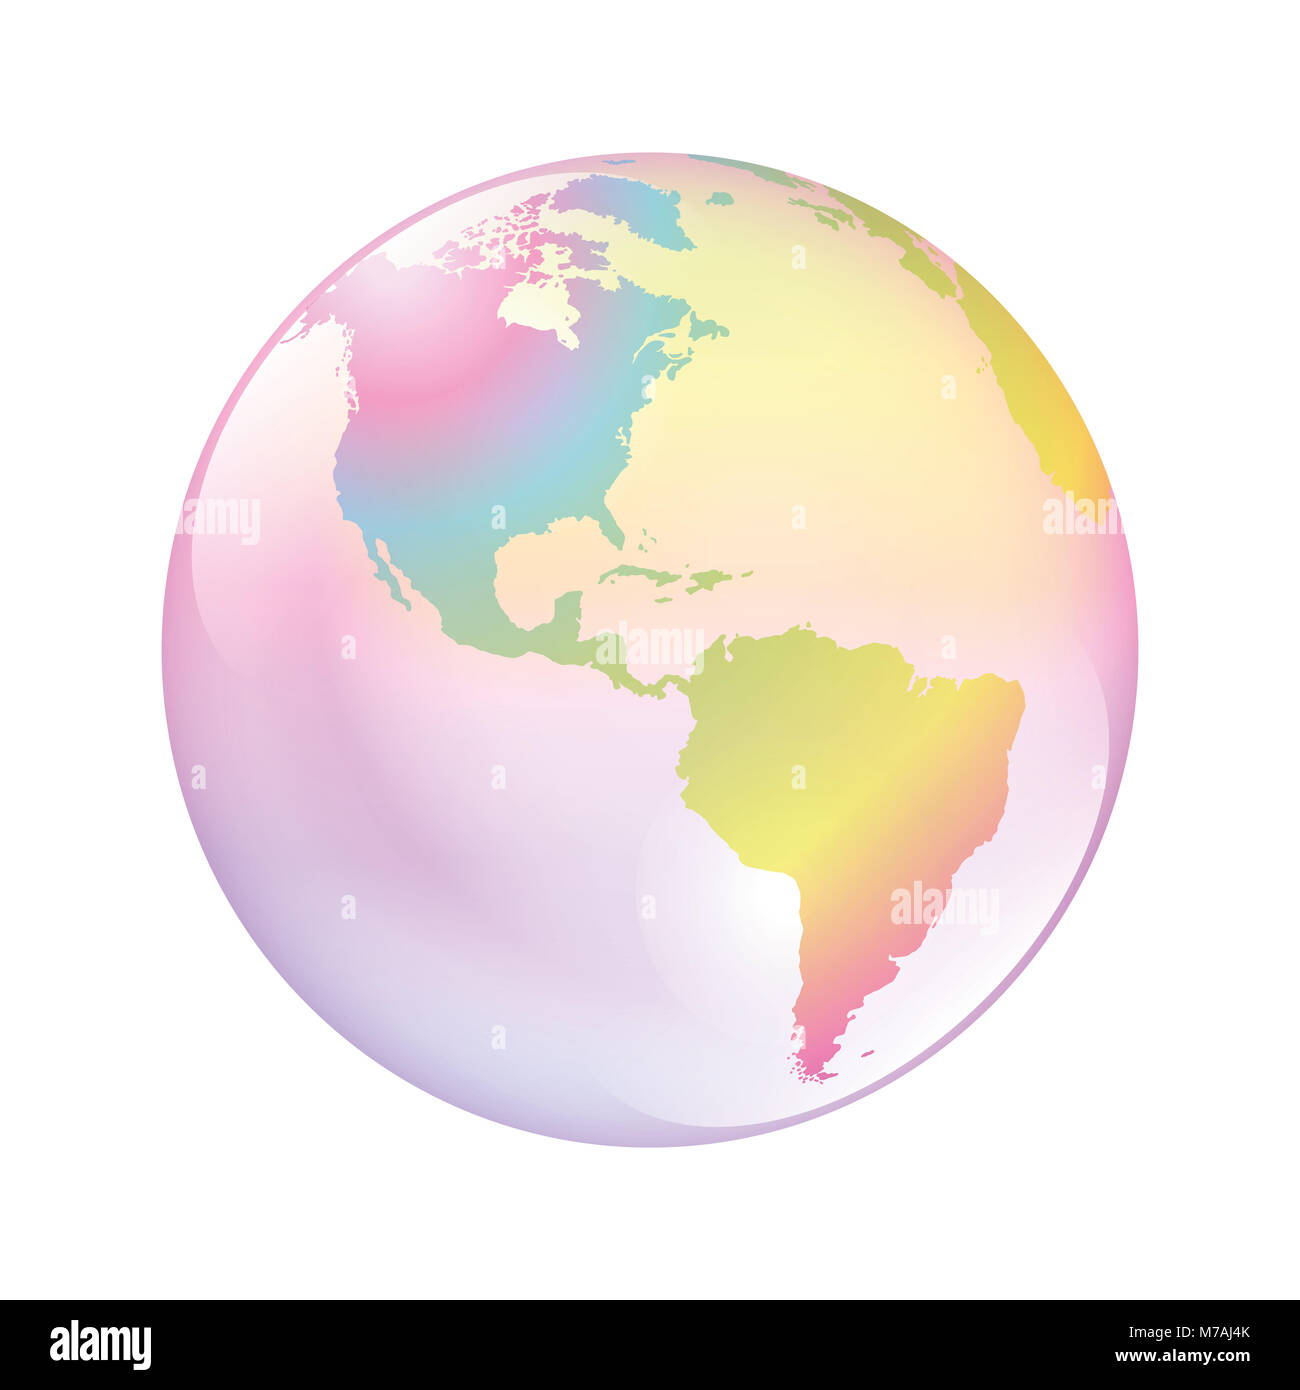 La burbuja de la tierra. El mundo como un planeta frágil, símbolo de la naturaleza vulnerable, el clima, el medio ambiente, la humanidad y otras cuestiones mundiales problemático. Foto de stock